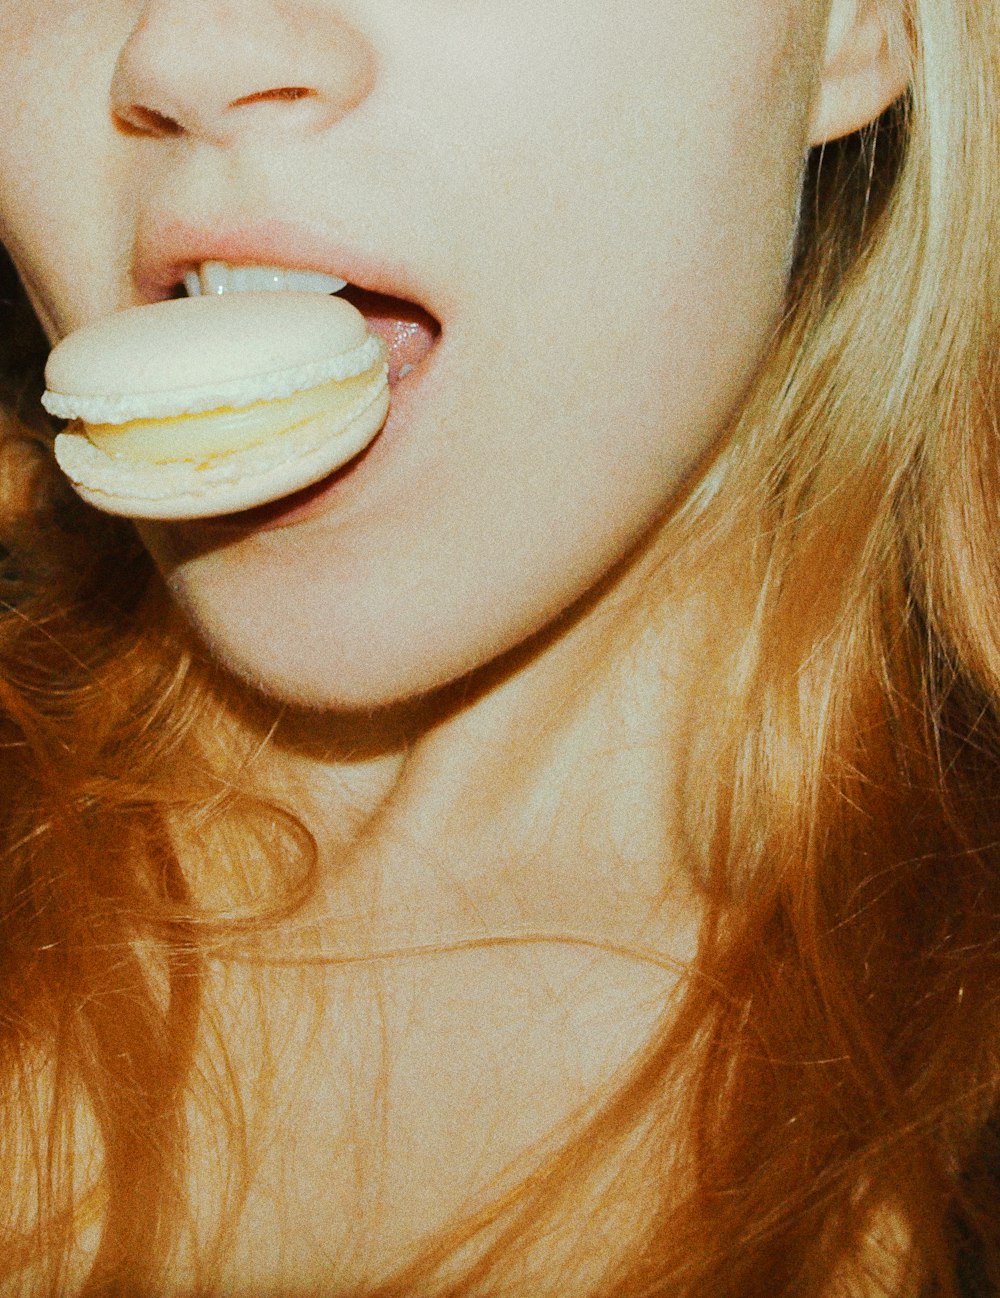 mujer con helado blanco en la boca